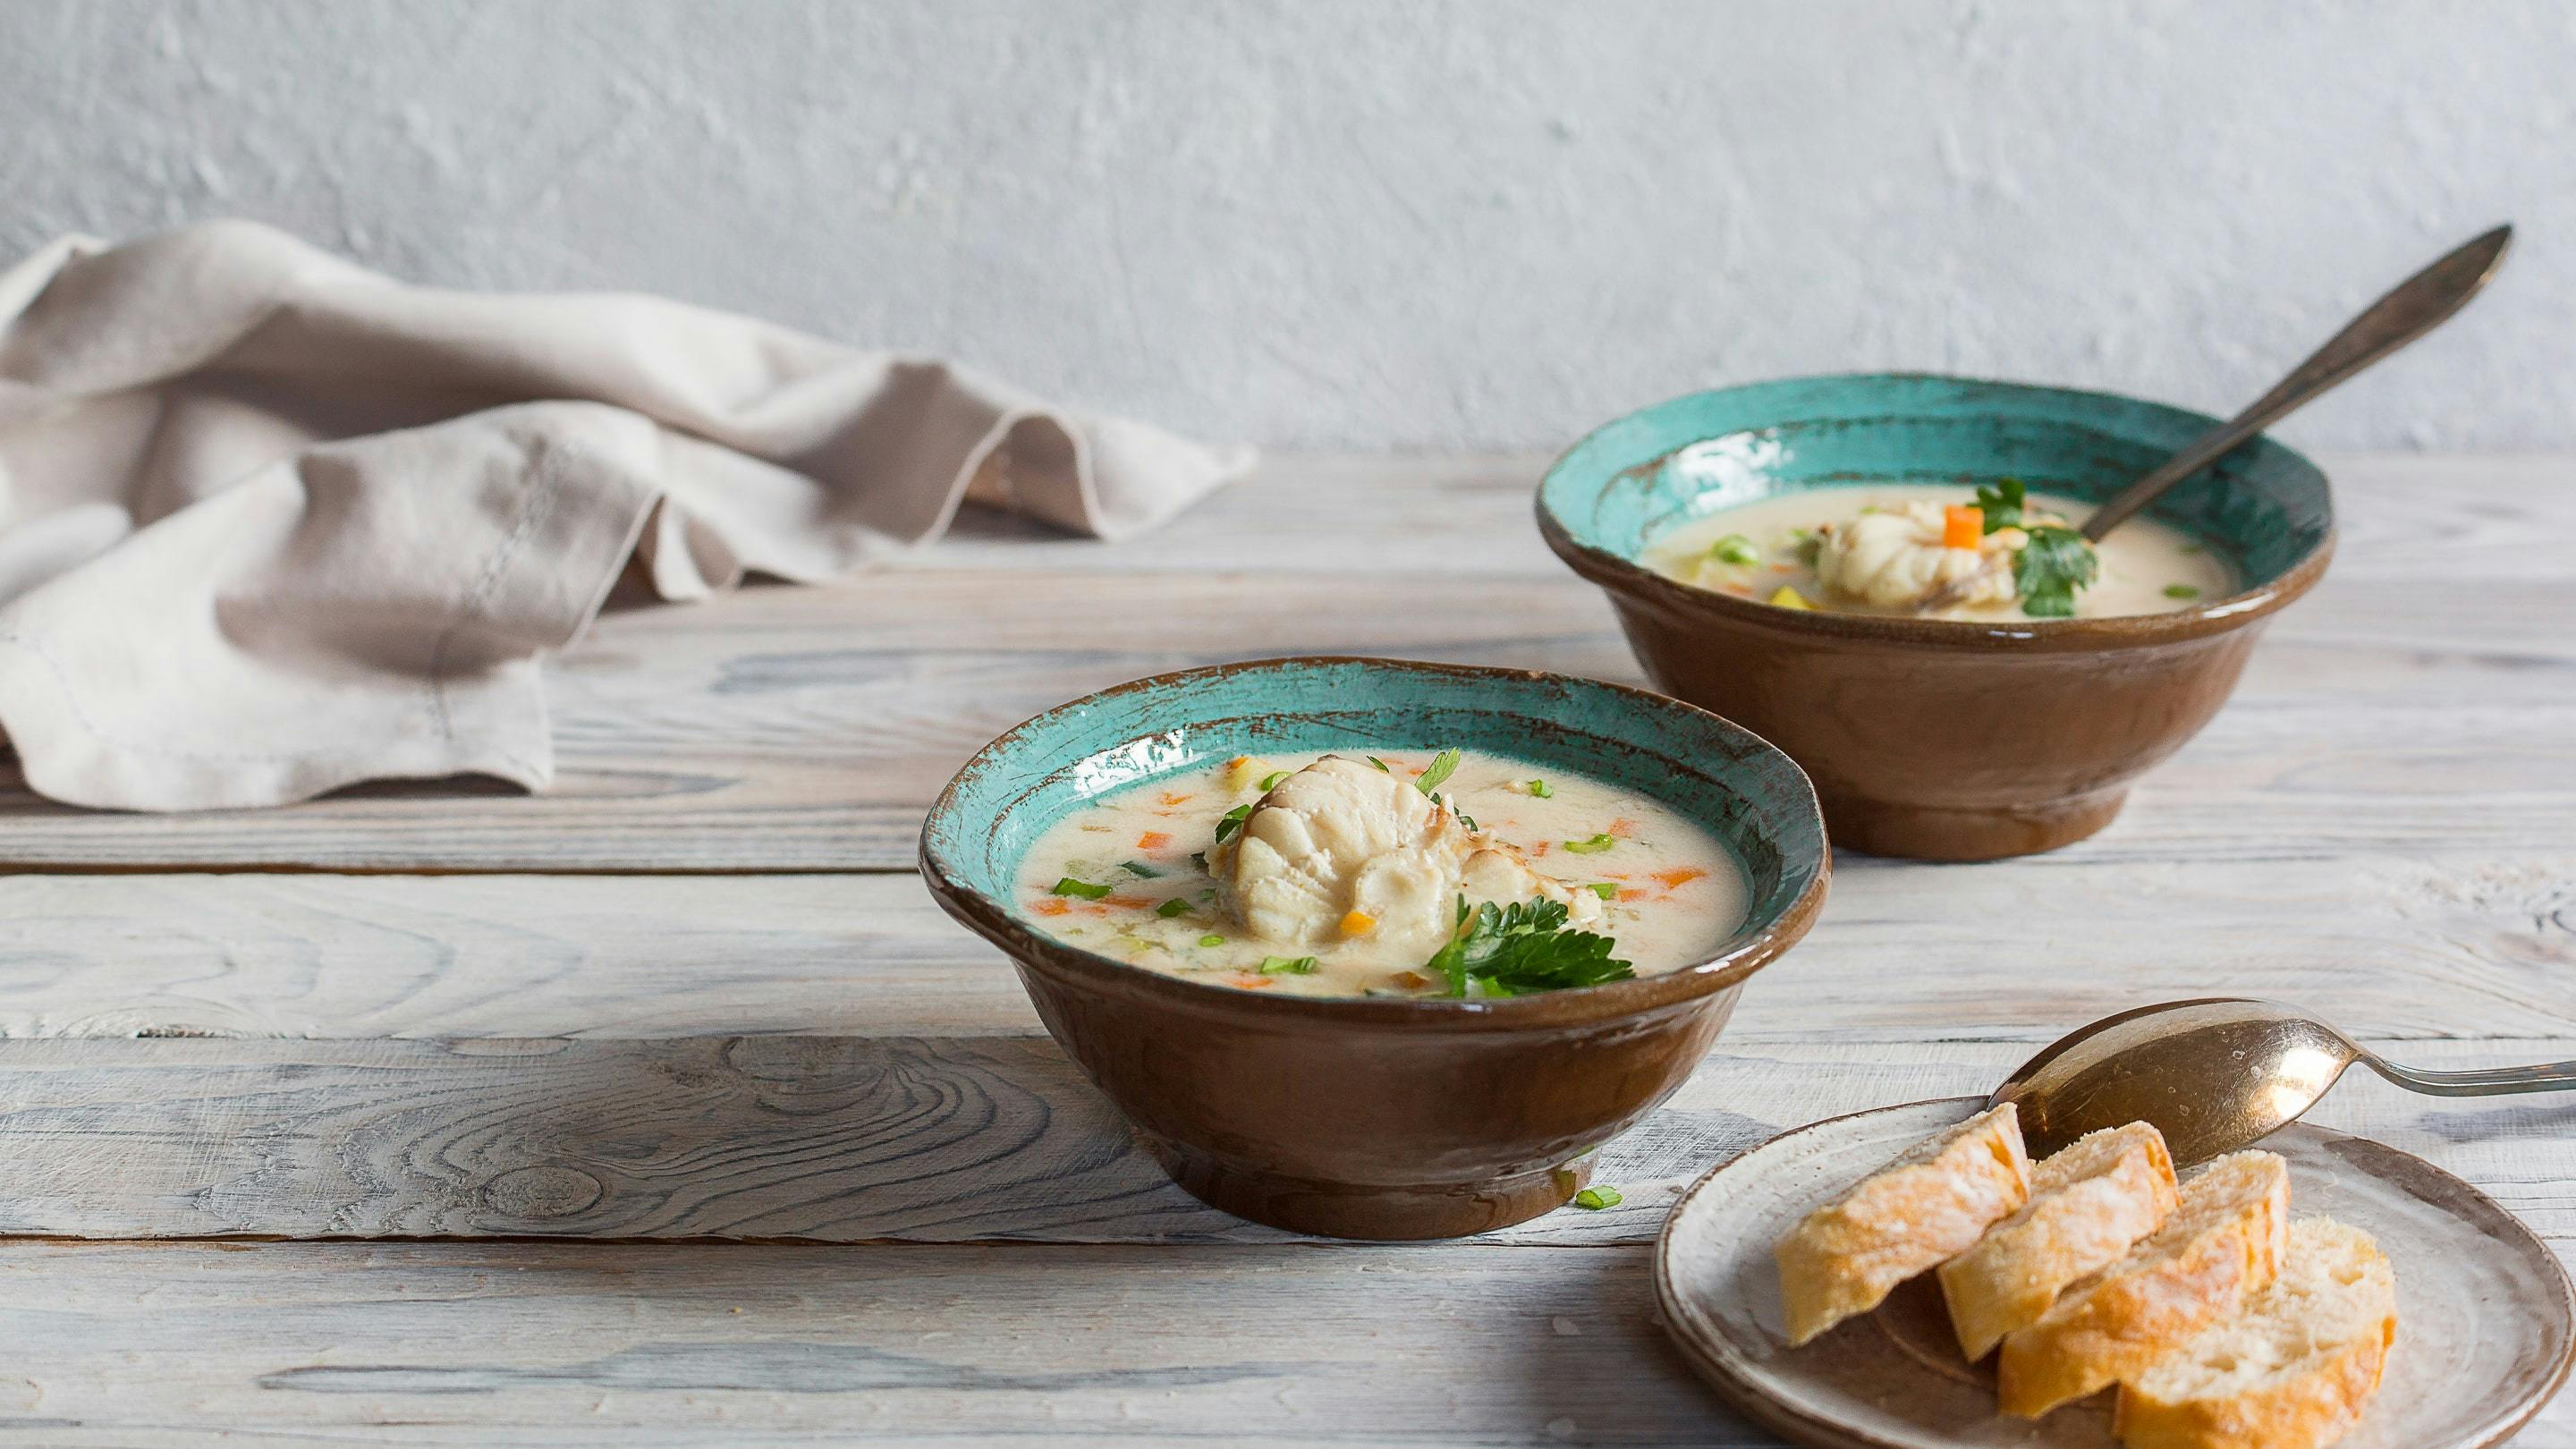 Traditionelle Fischsuppe wird in Norwegen mit saisonalen Fischen zubereitet.